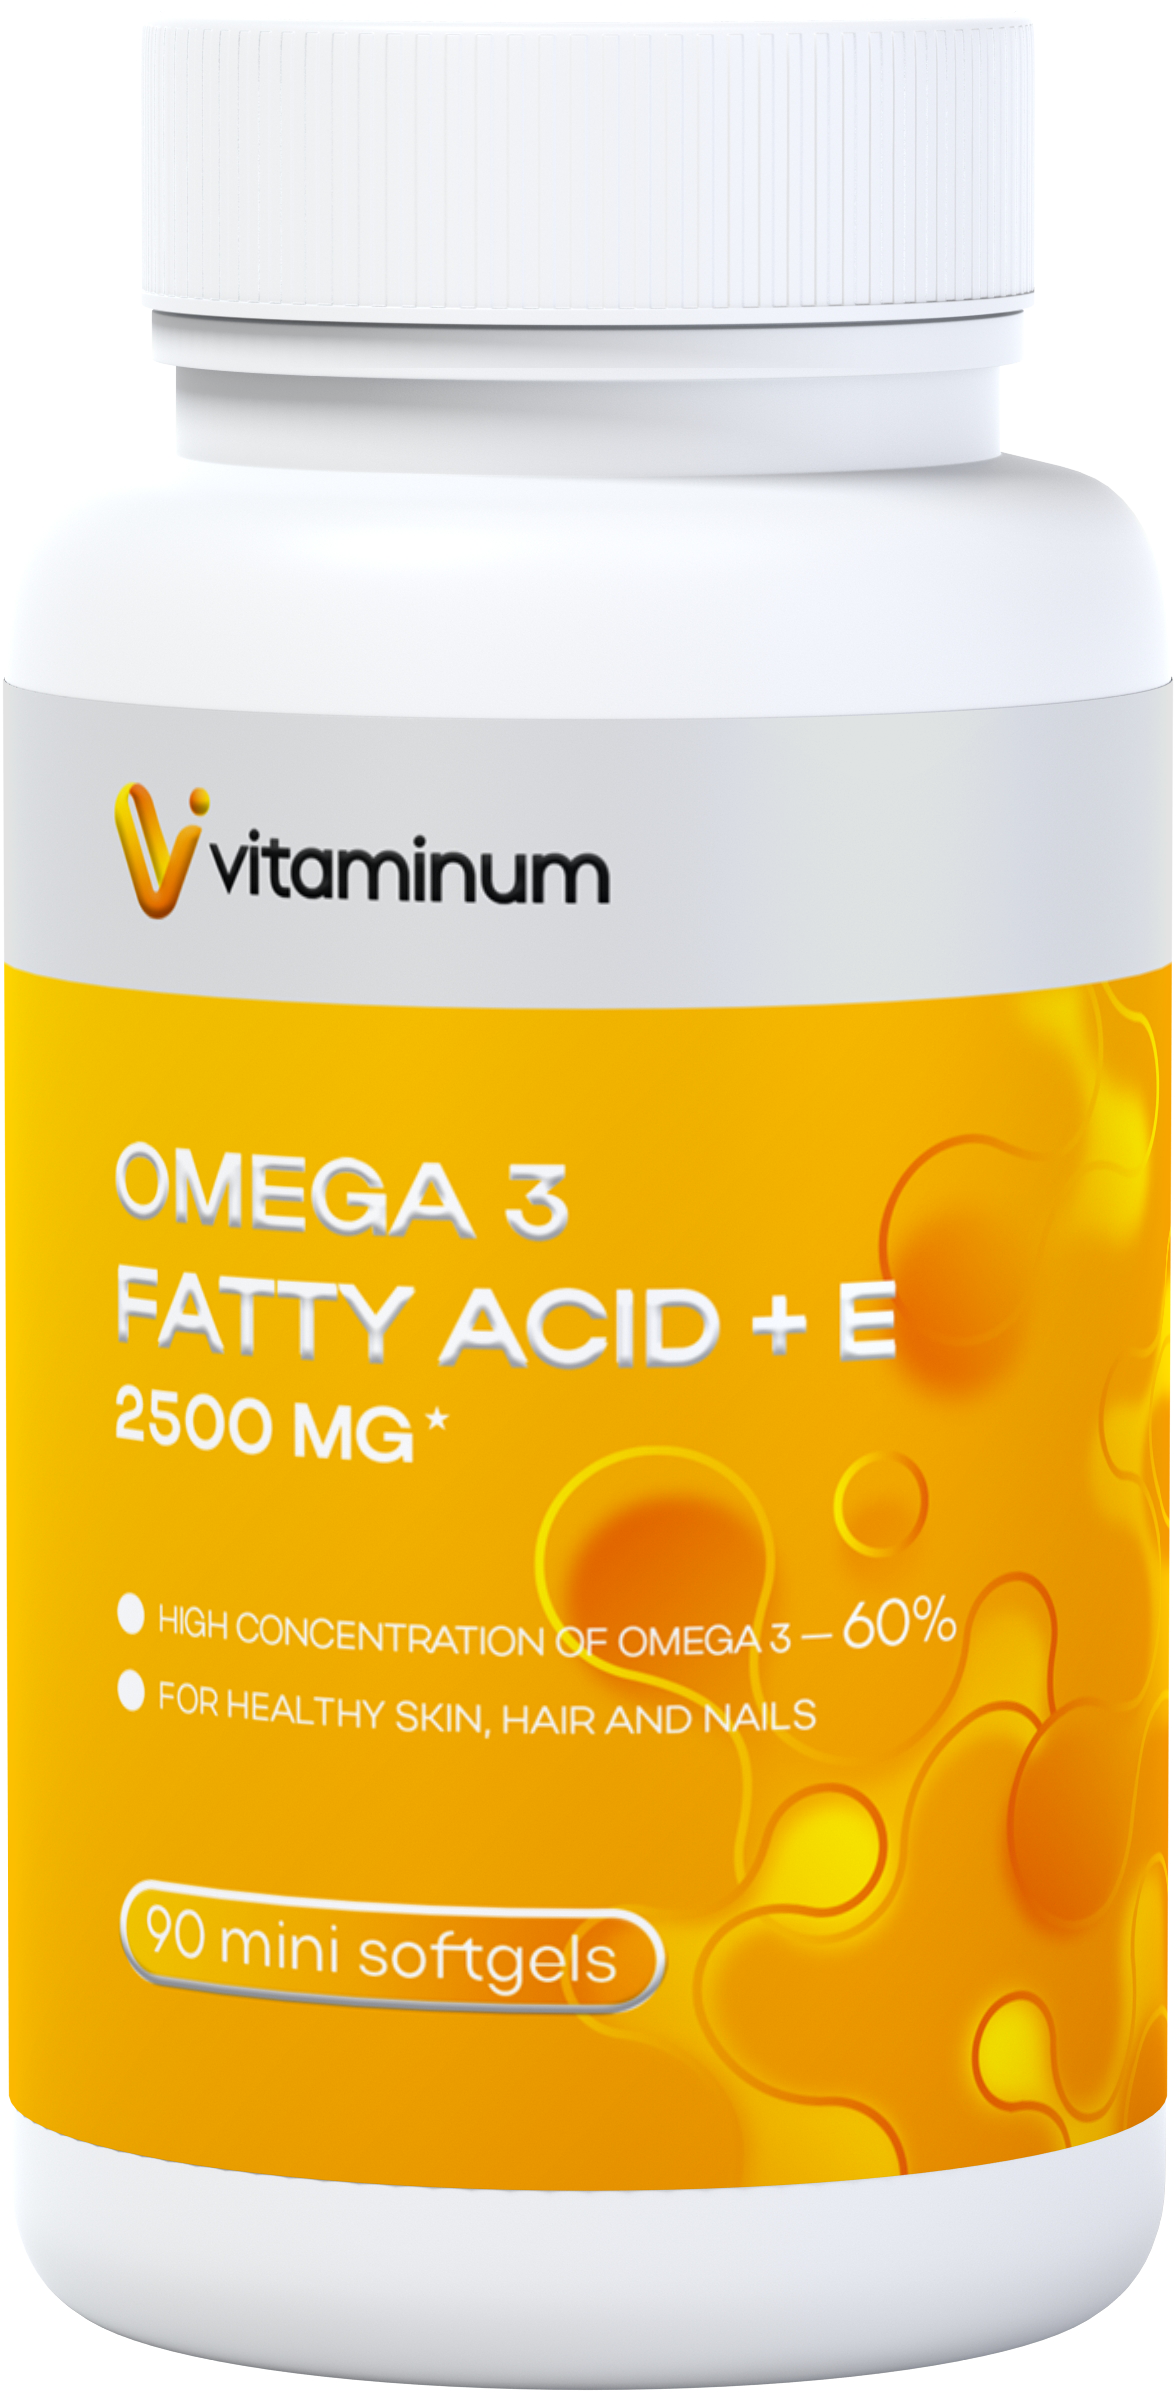  Vitaminum ОМЕГА 3 60% + витамин Е (2500 MG*) 90 капсул 700 мг   в Саранске